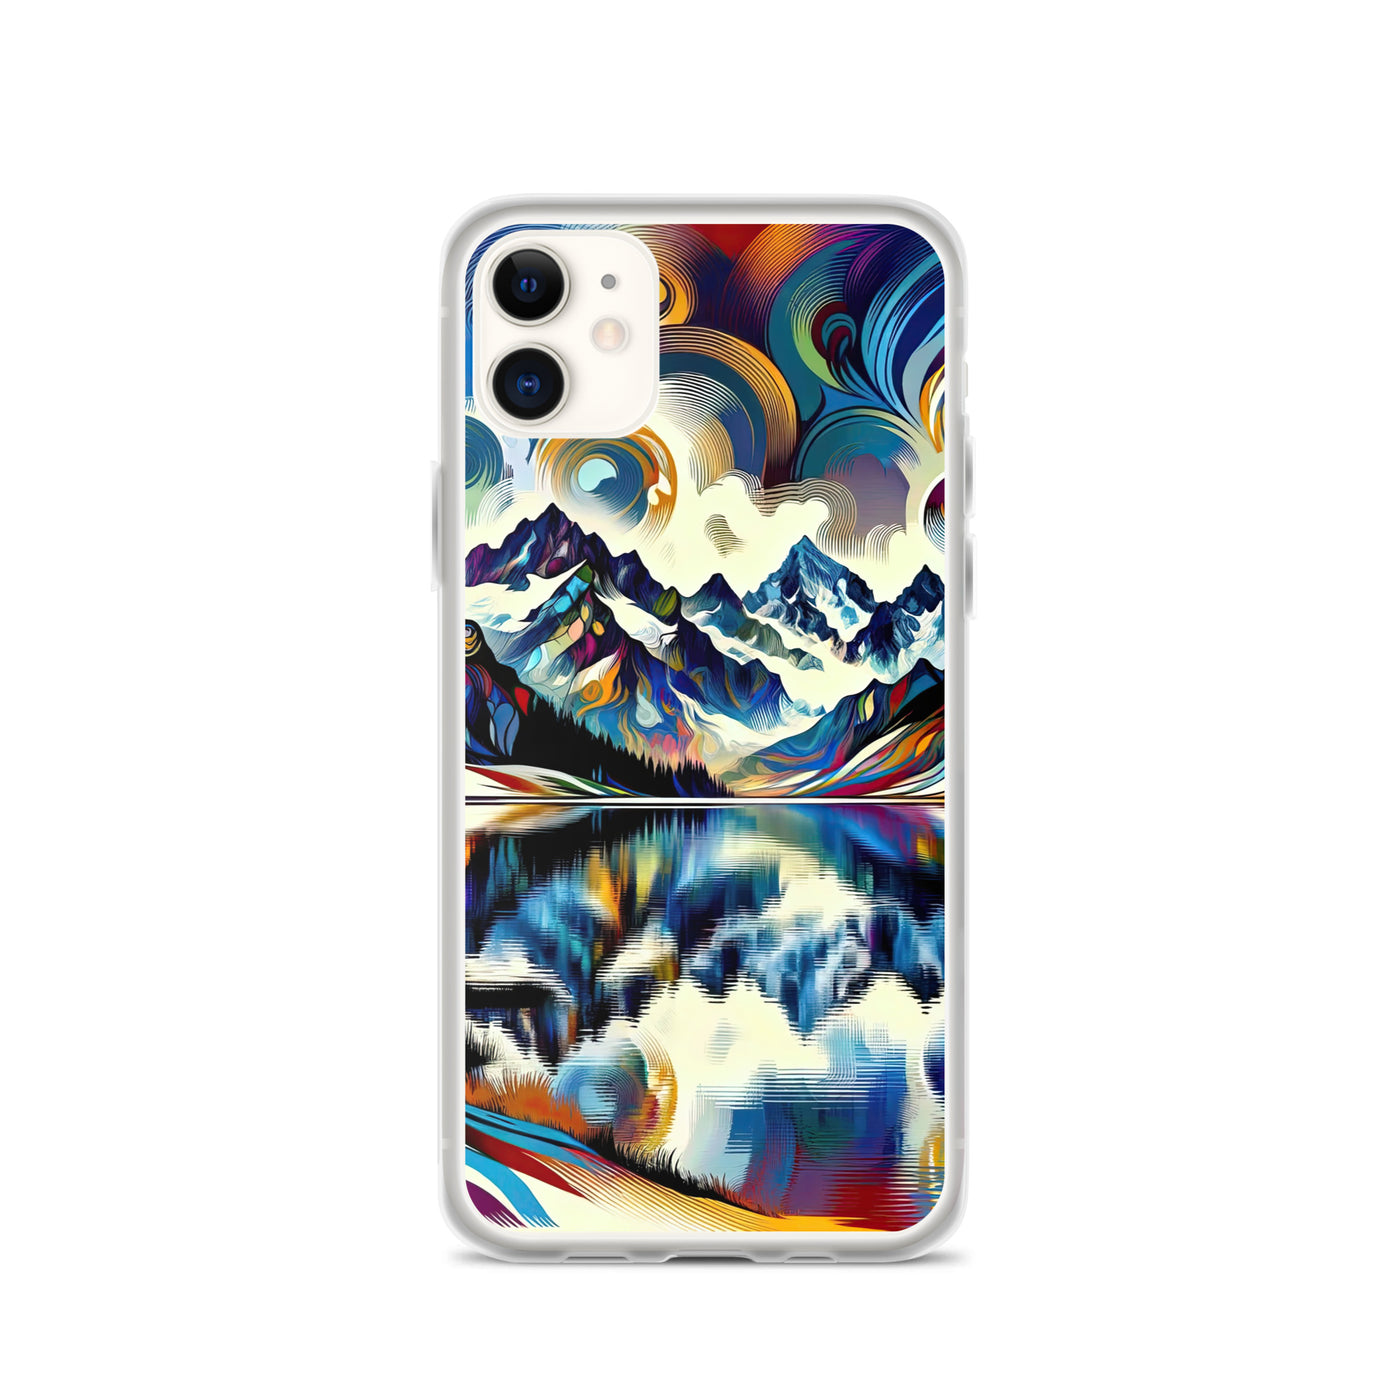 Alpensee im Zentrum eines abstrakt-expressionistischen Alpen-Kunstwerks - iPhone Schutzhülle (durchsichtig) berge xxx yyy zzz iPhone 11